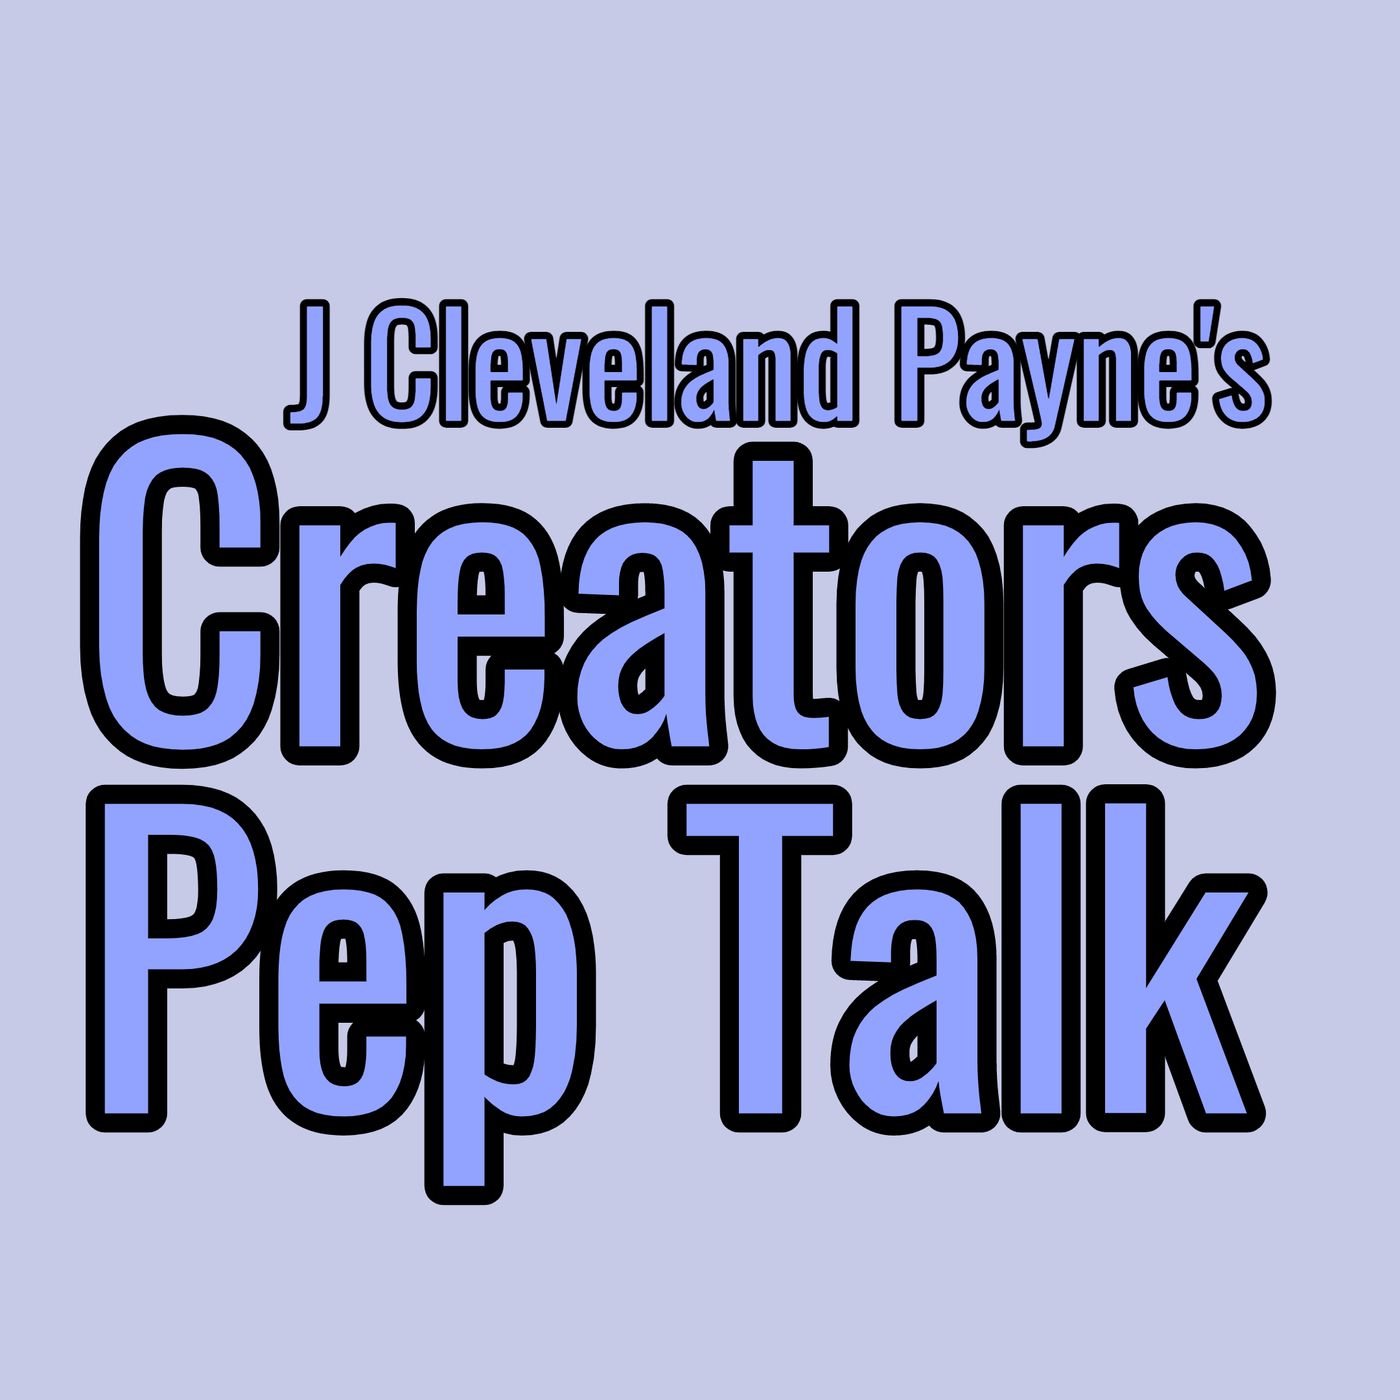 J Cleveland Payne’s Podcast Pep Talk